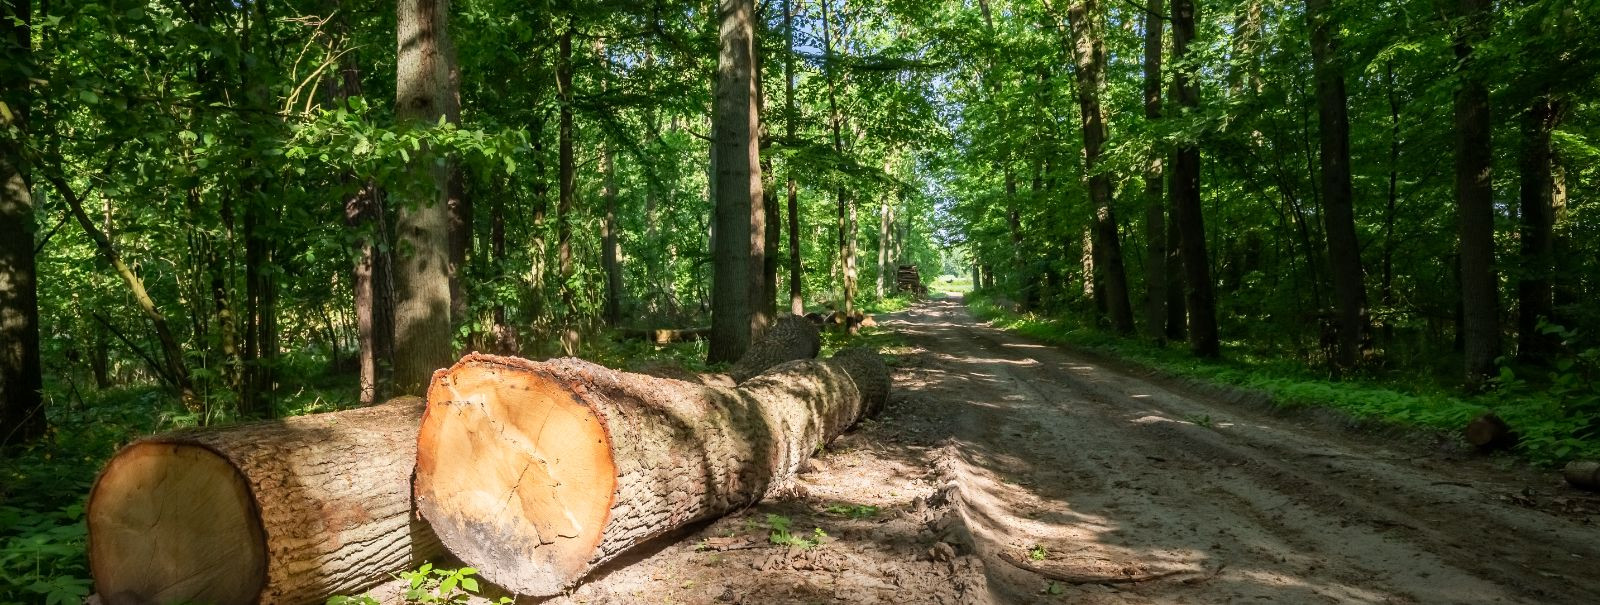 Hansatrust on juhtiv ettevõte, mis pakub kõrgtasemel metsamajanduse ja taastuvate hakkepuidu teenuseid. Oleme pühendunud säästva metsanduse põhimõtetele, tagade